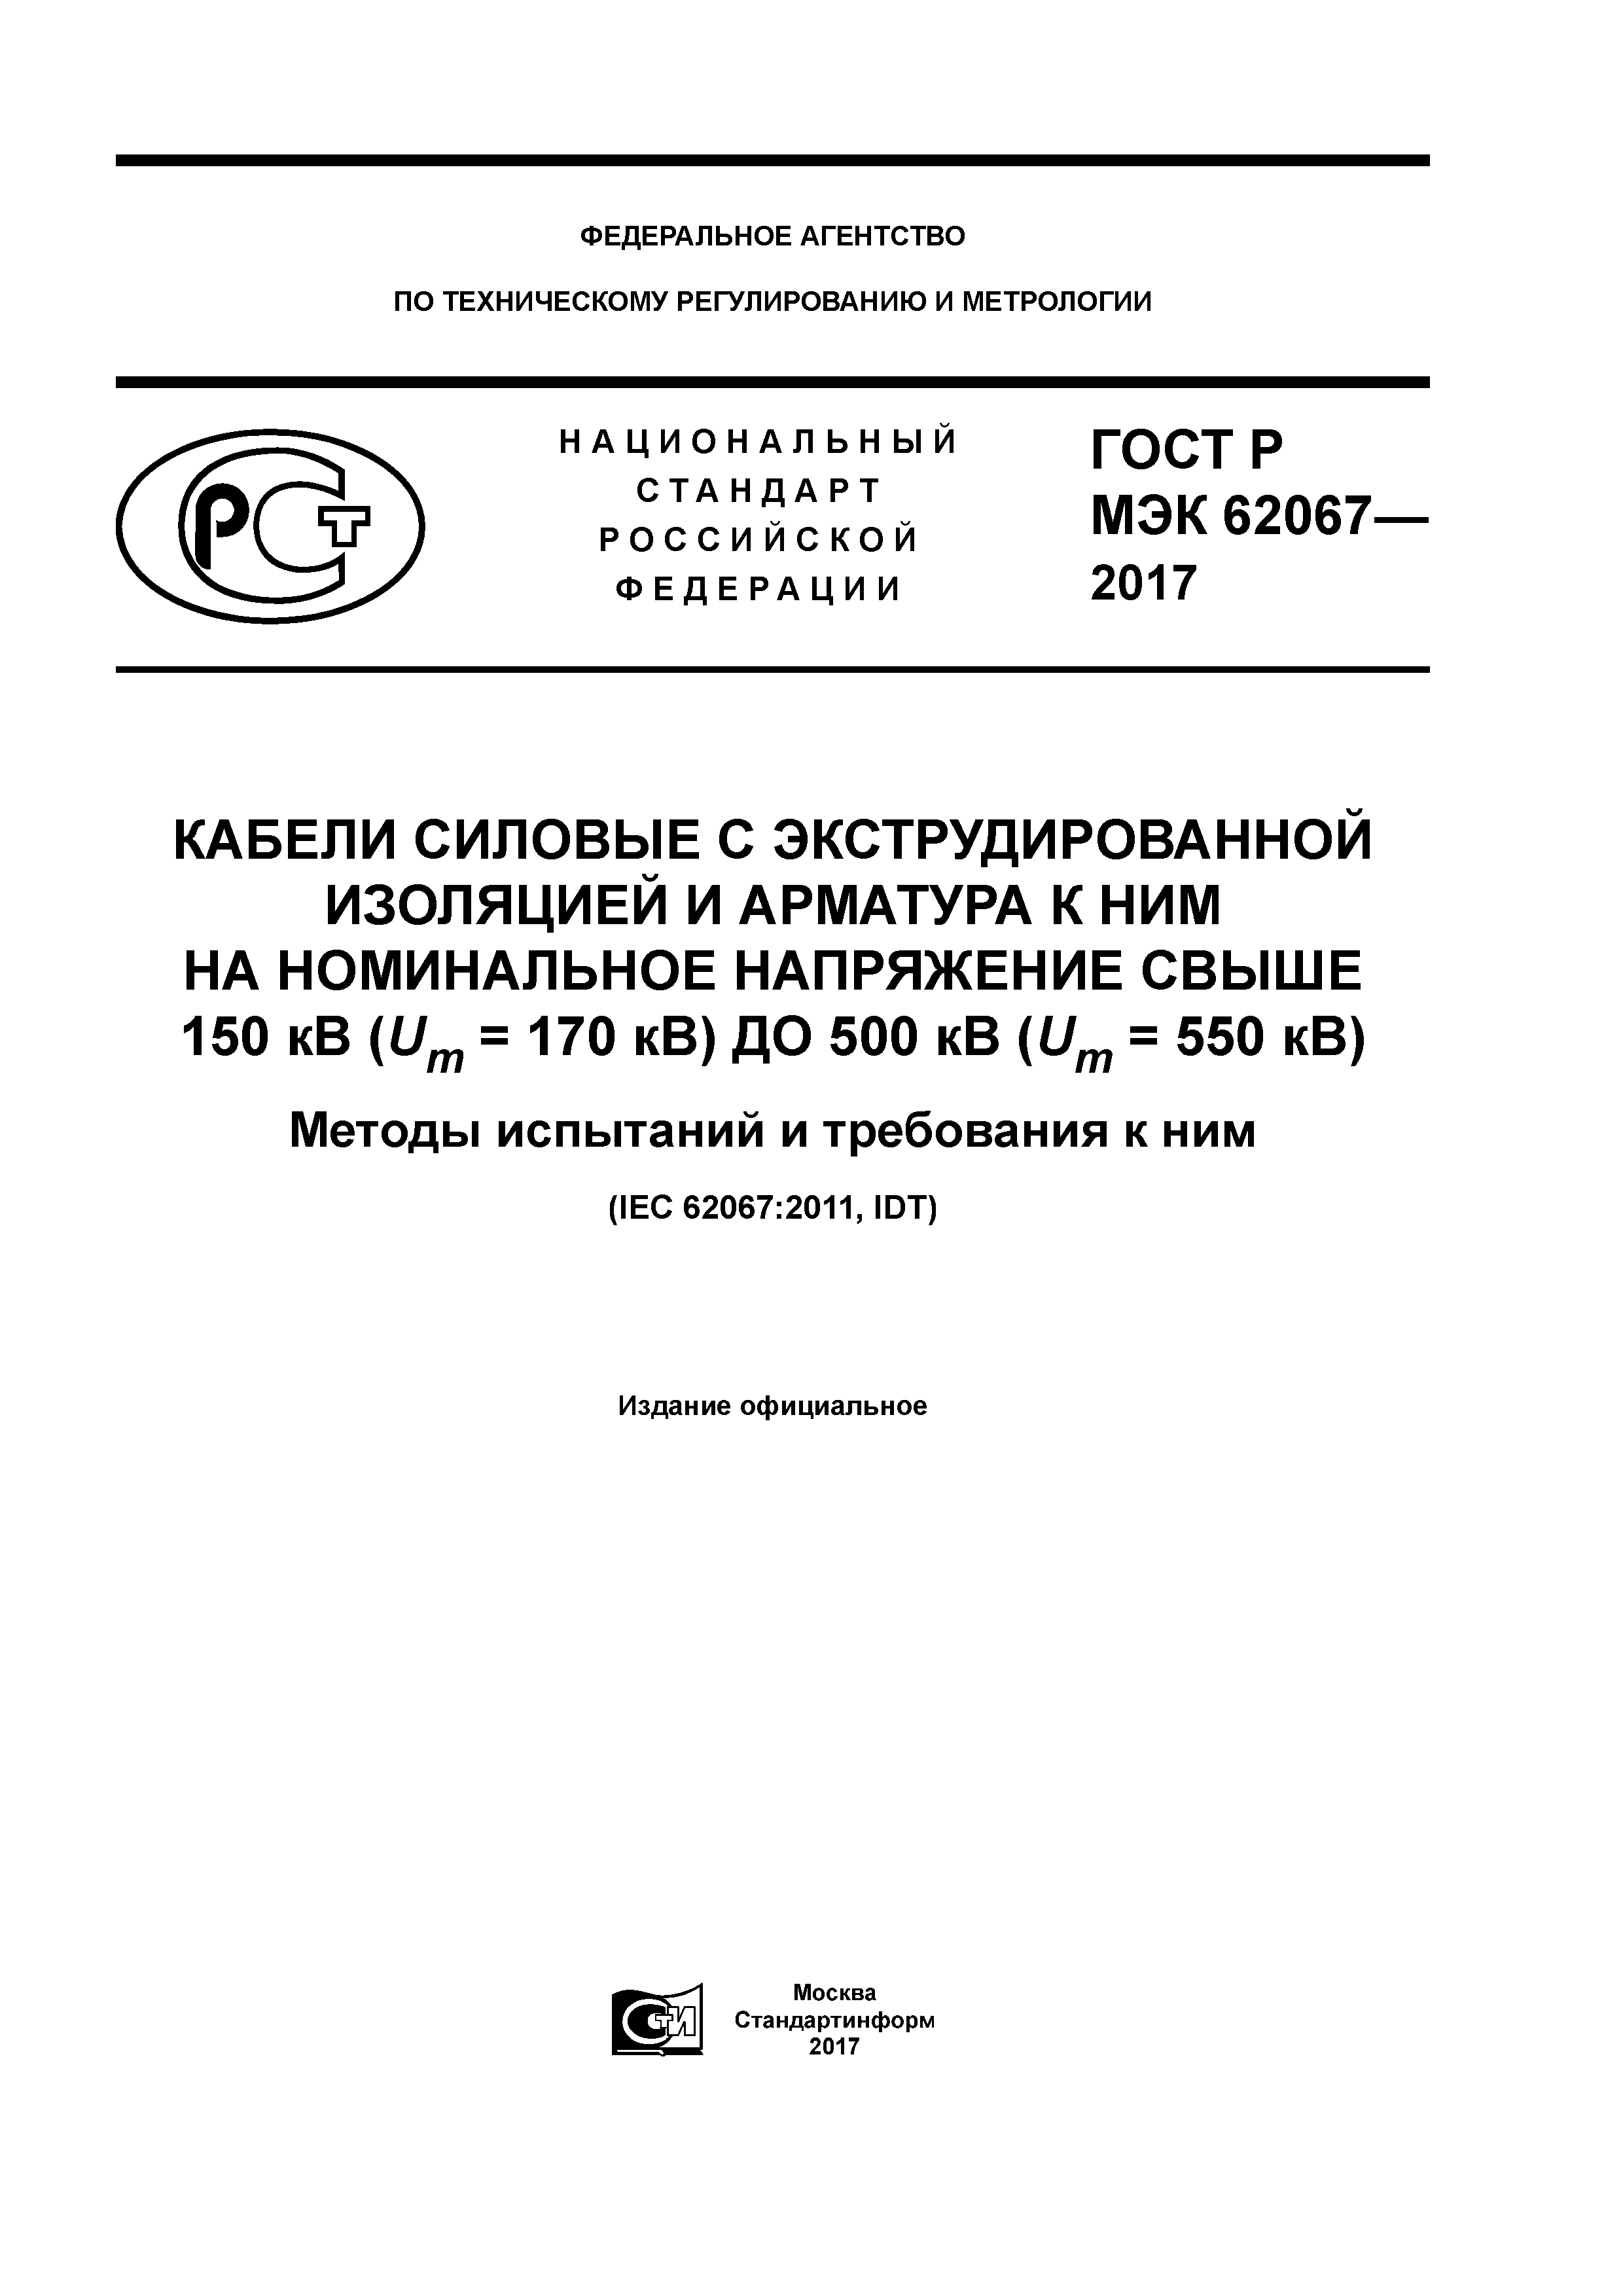 ГОСТ Р МЭК 62067-2017